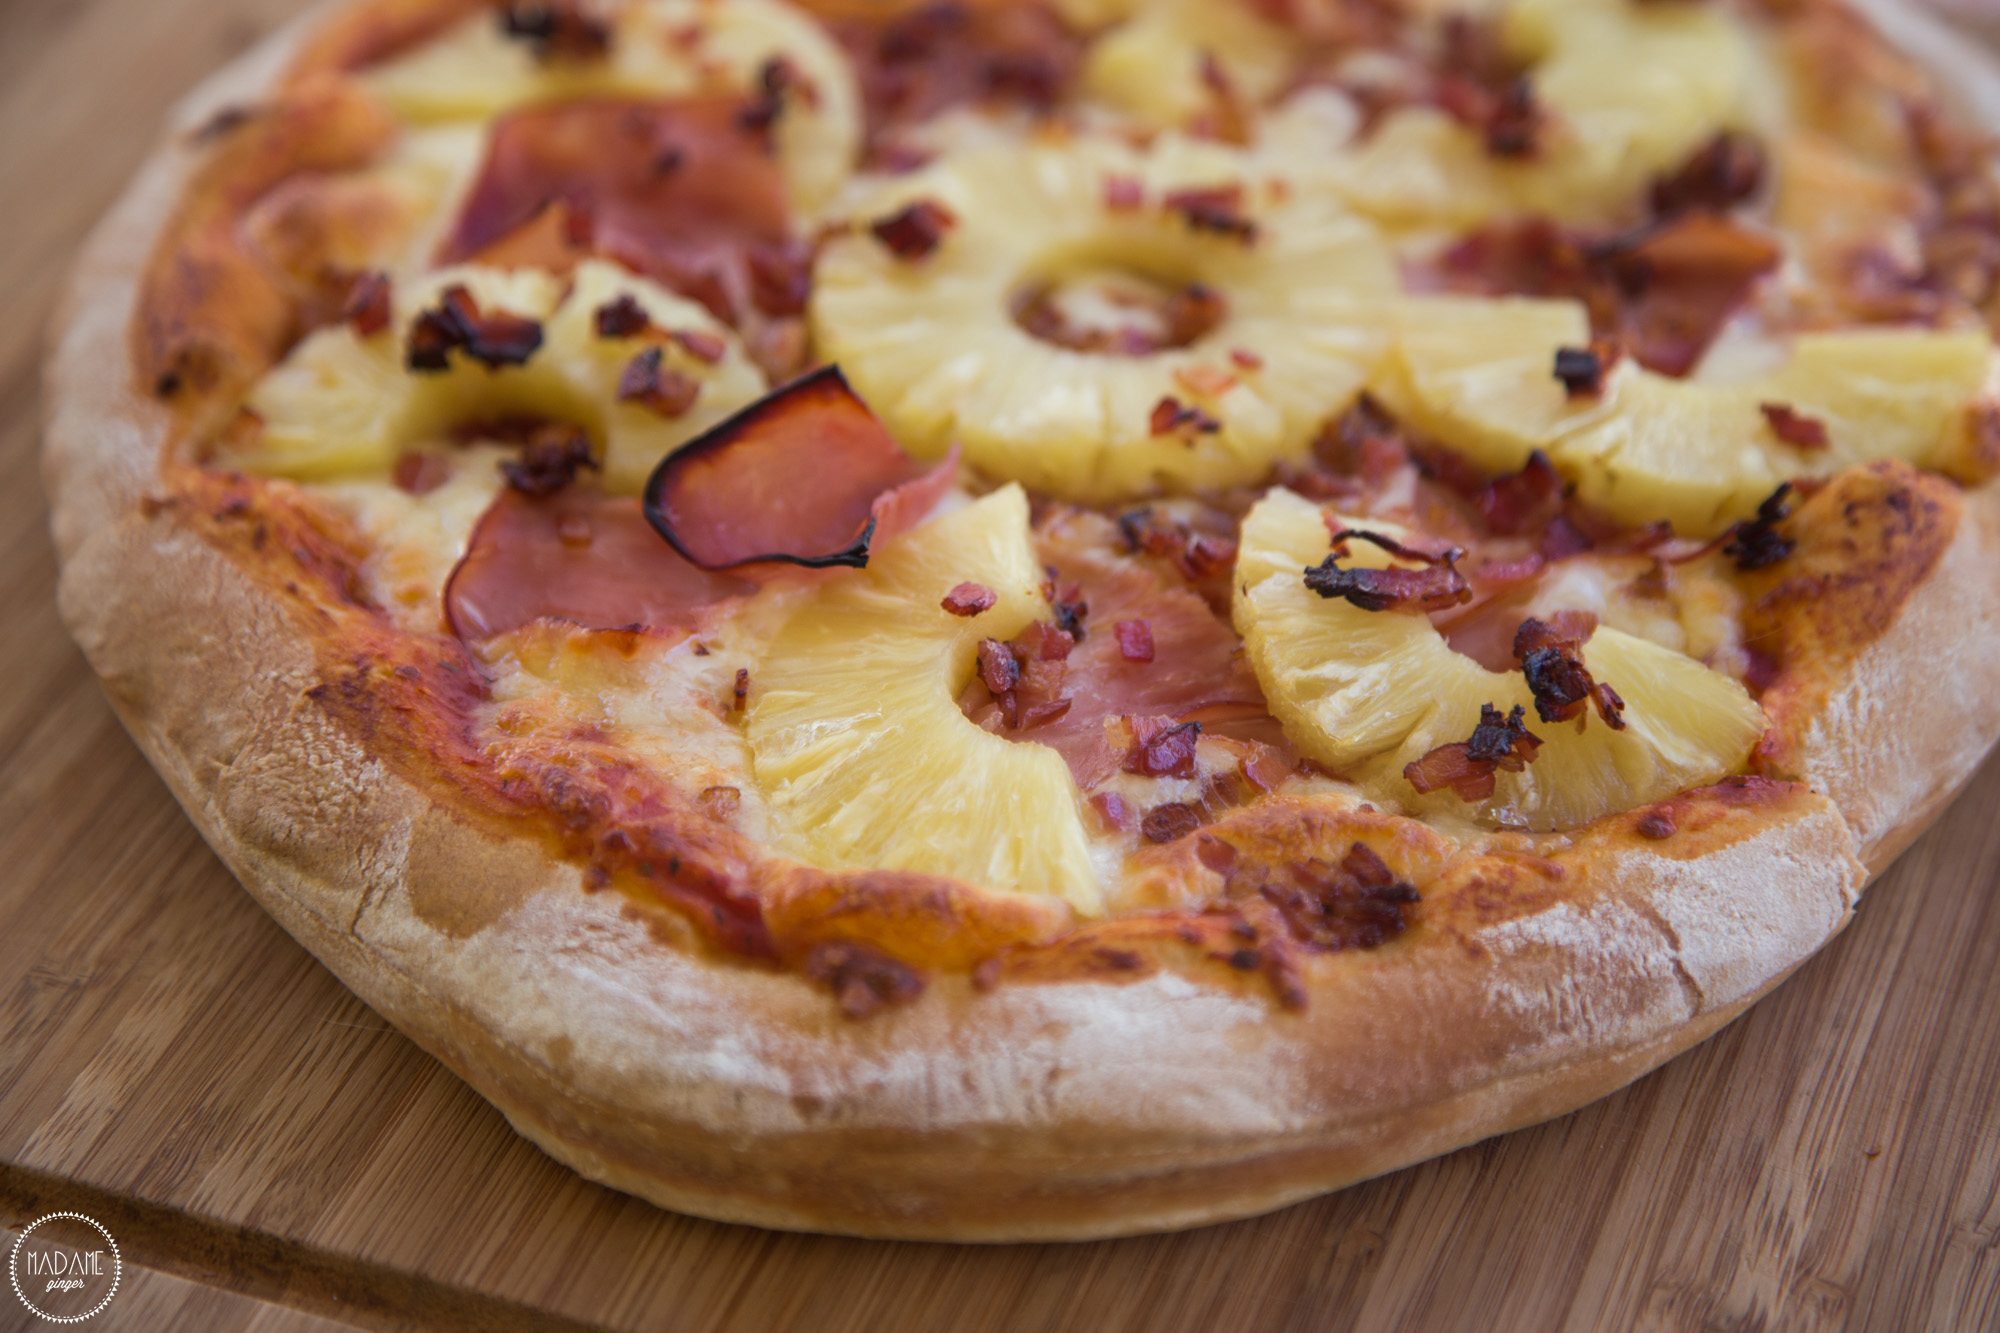 Υπάλληλος αποκαλύπτει τα 4 μυστικά που οι εταιρείες πίτσας δεν μας λένε